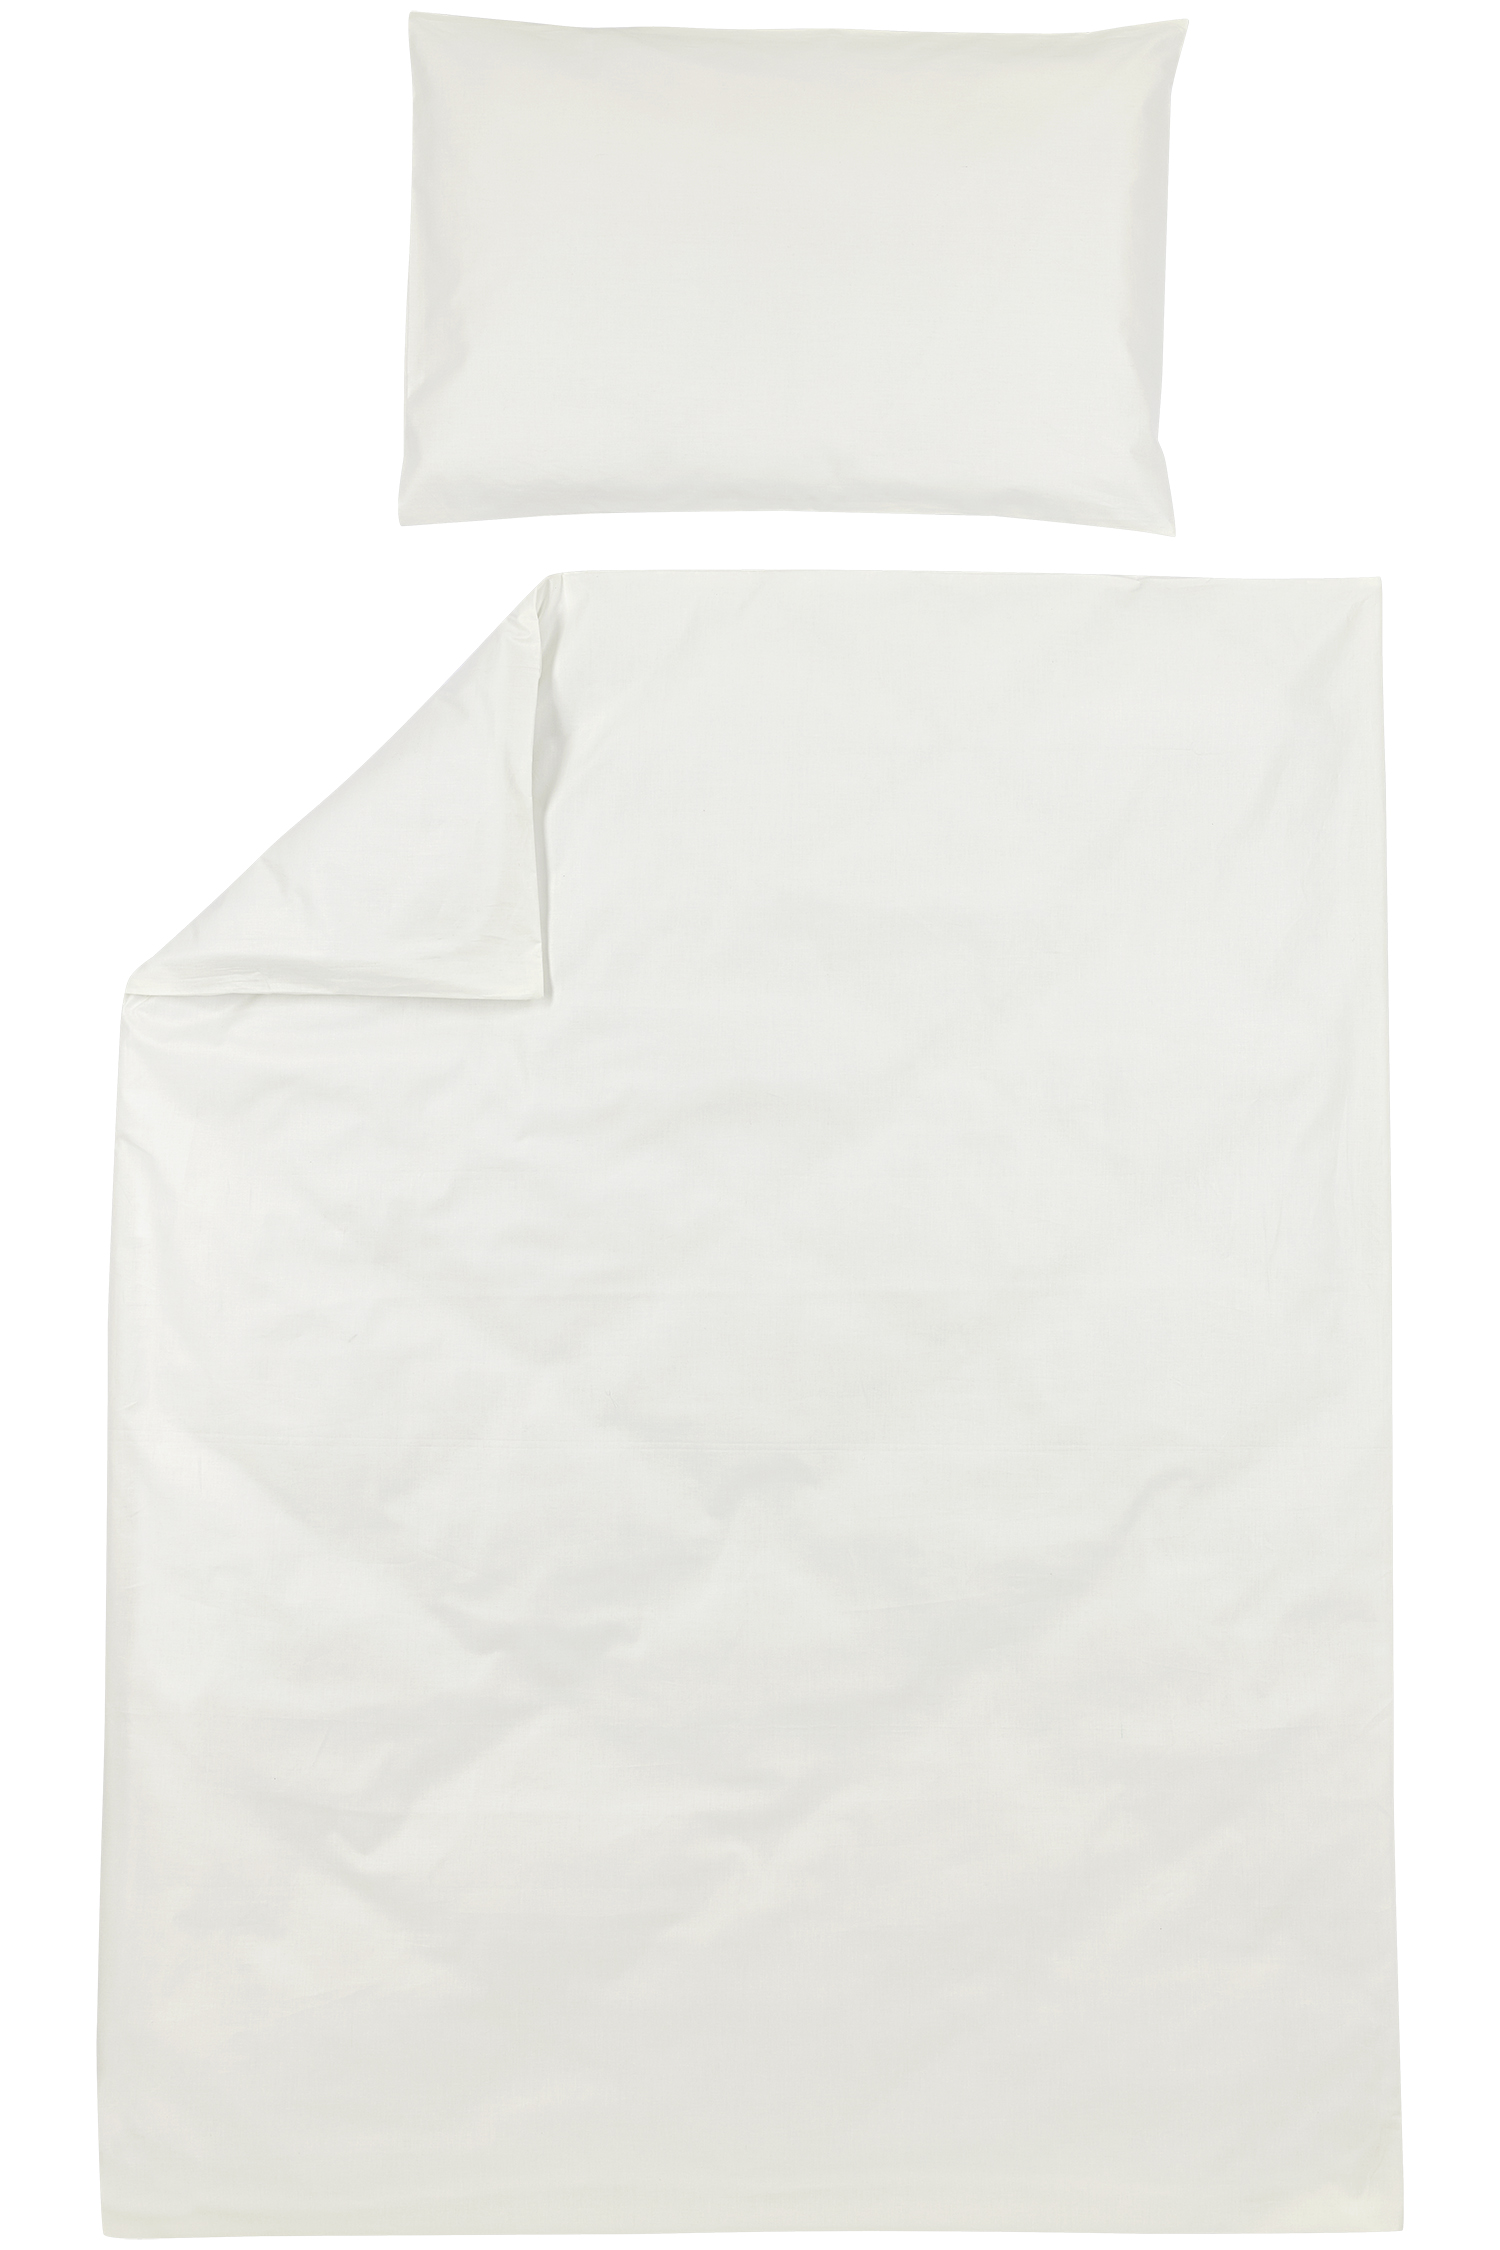 Duvet Cover + Pillowcase Uni - Offwhite - 100x135cm